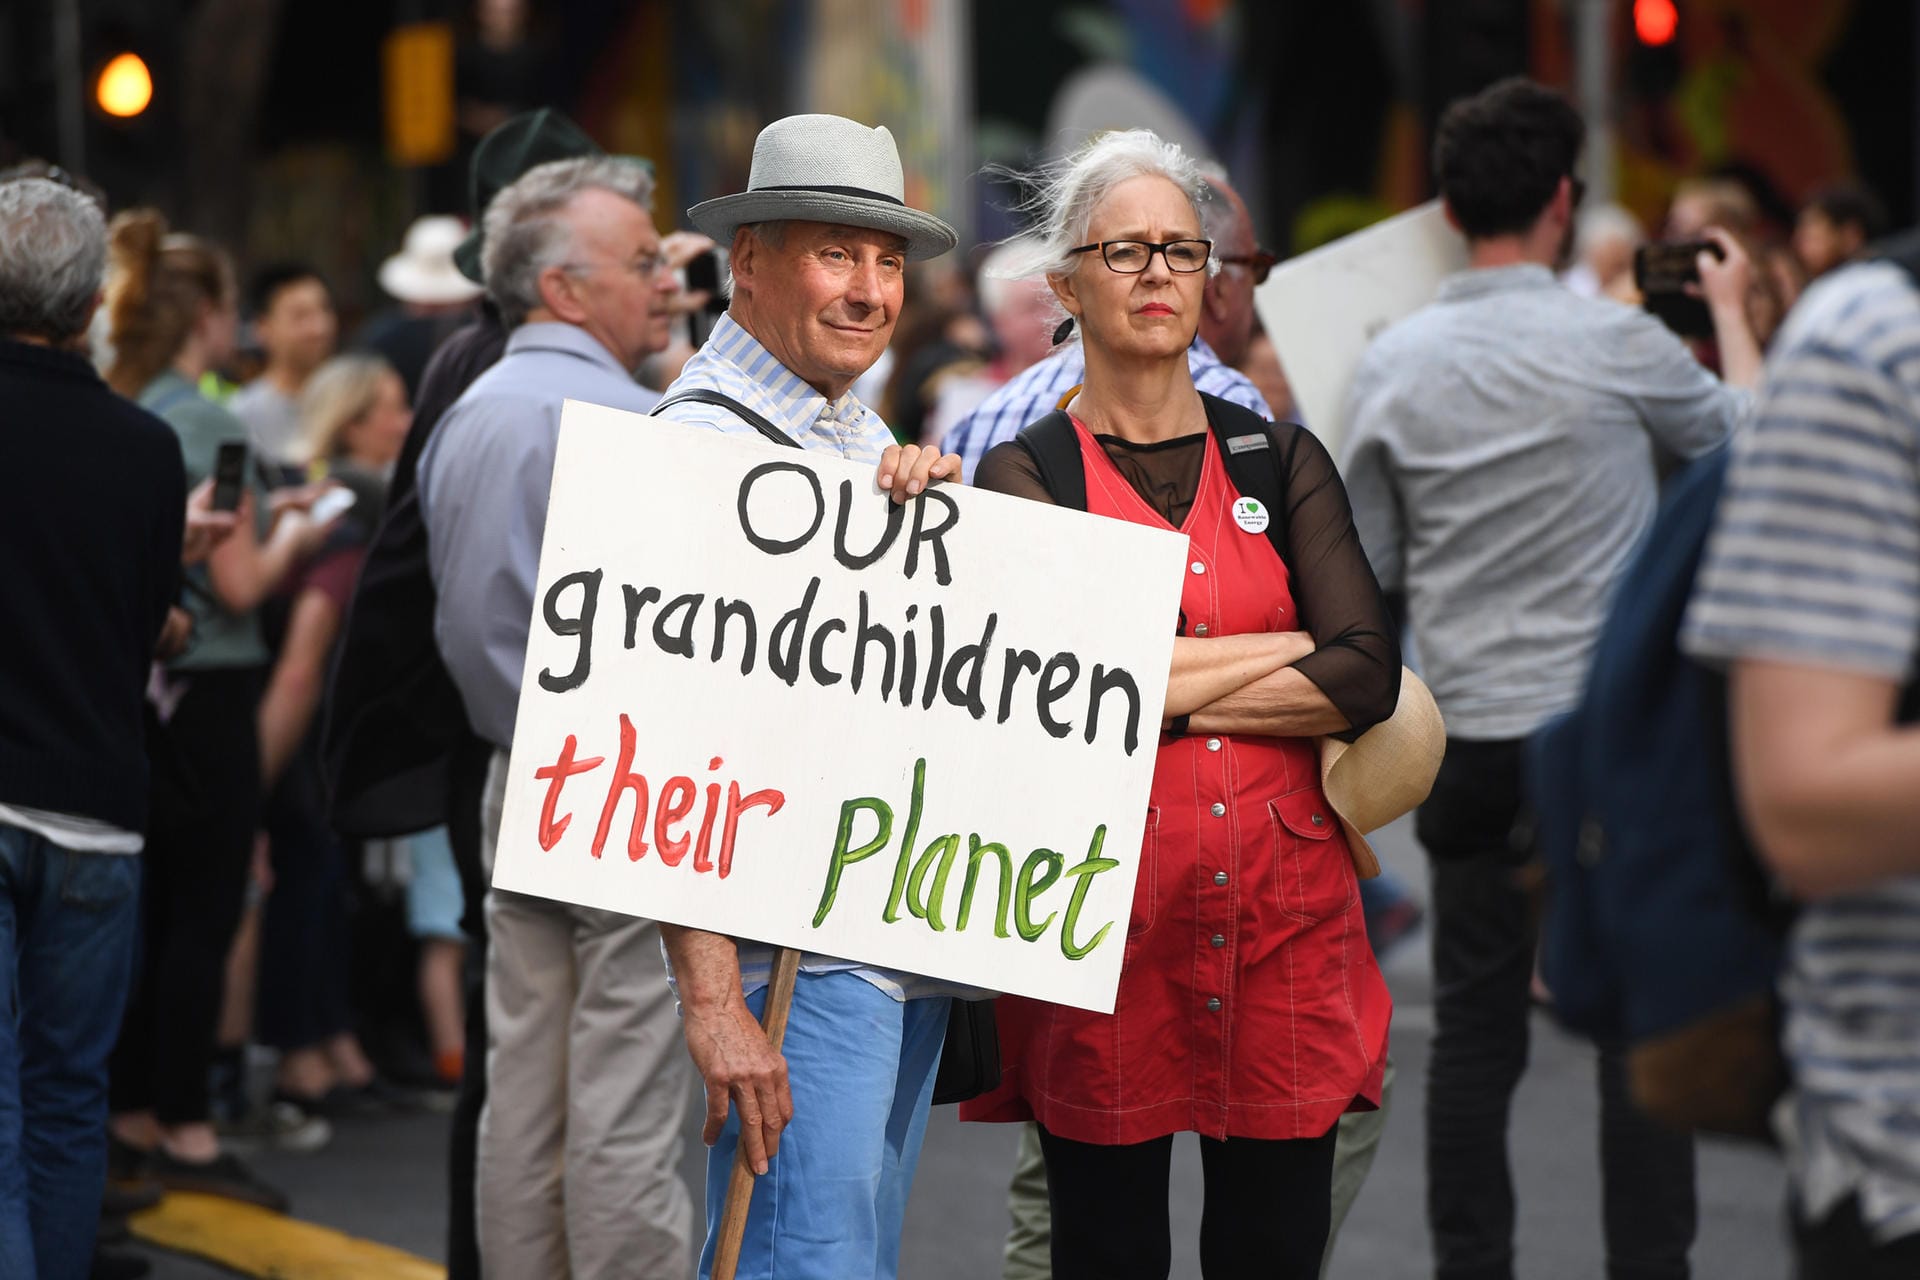 In Melbourne in Australien hält ein älteres Pärchen bei einer Demonstration ein Schild mit der Aufschrift "Our grandchildren their planet" hoch. Die Demonstranten folgen dem Aufruf der Bewegung "Strike 4 Climate" und wollen für mehr Klimaschutz kämpfen.